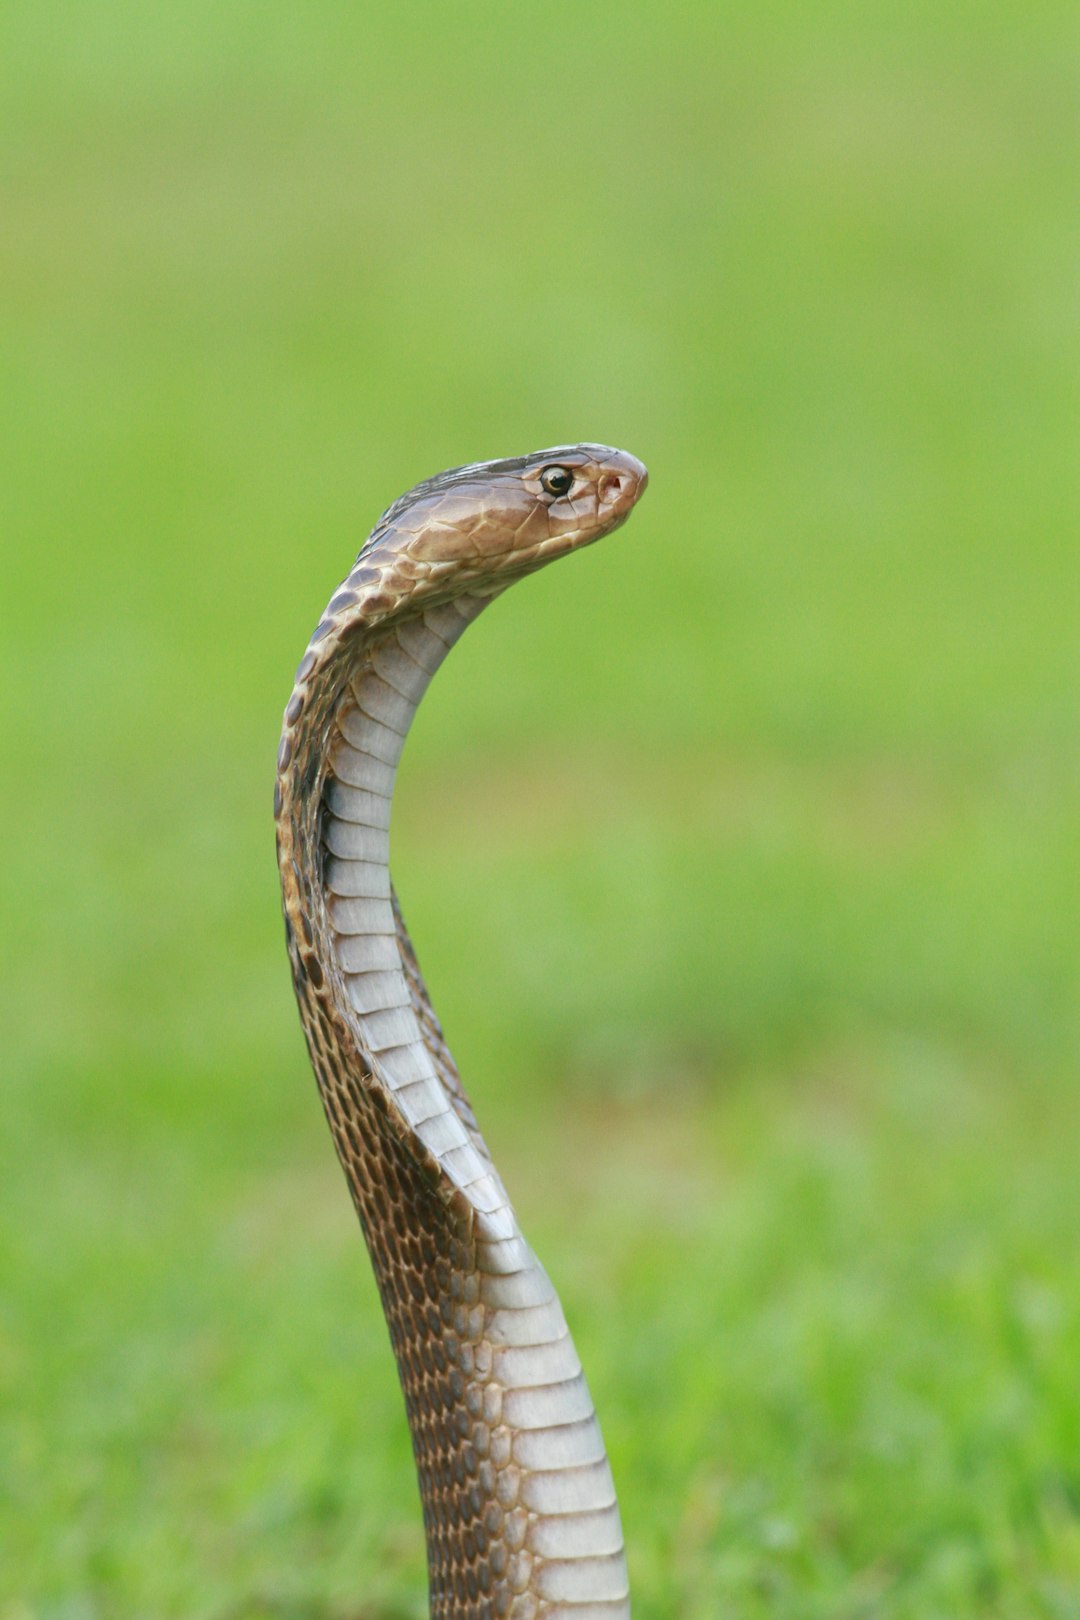 Cobra : définition de « cobra » | Dictionnaire - La langue française